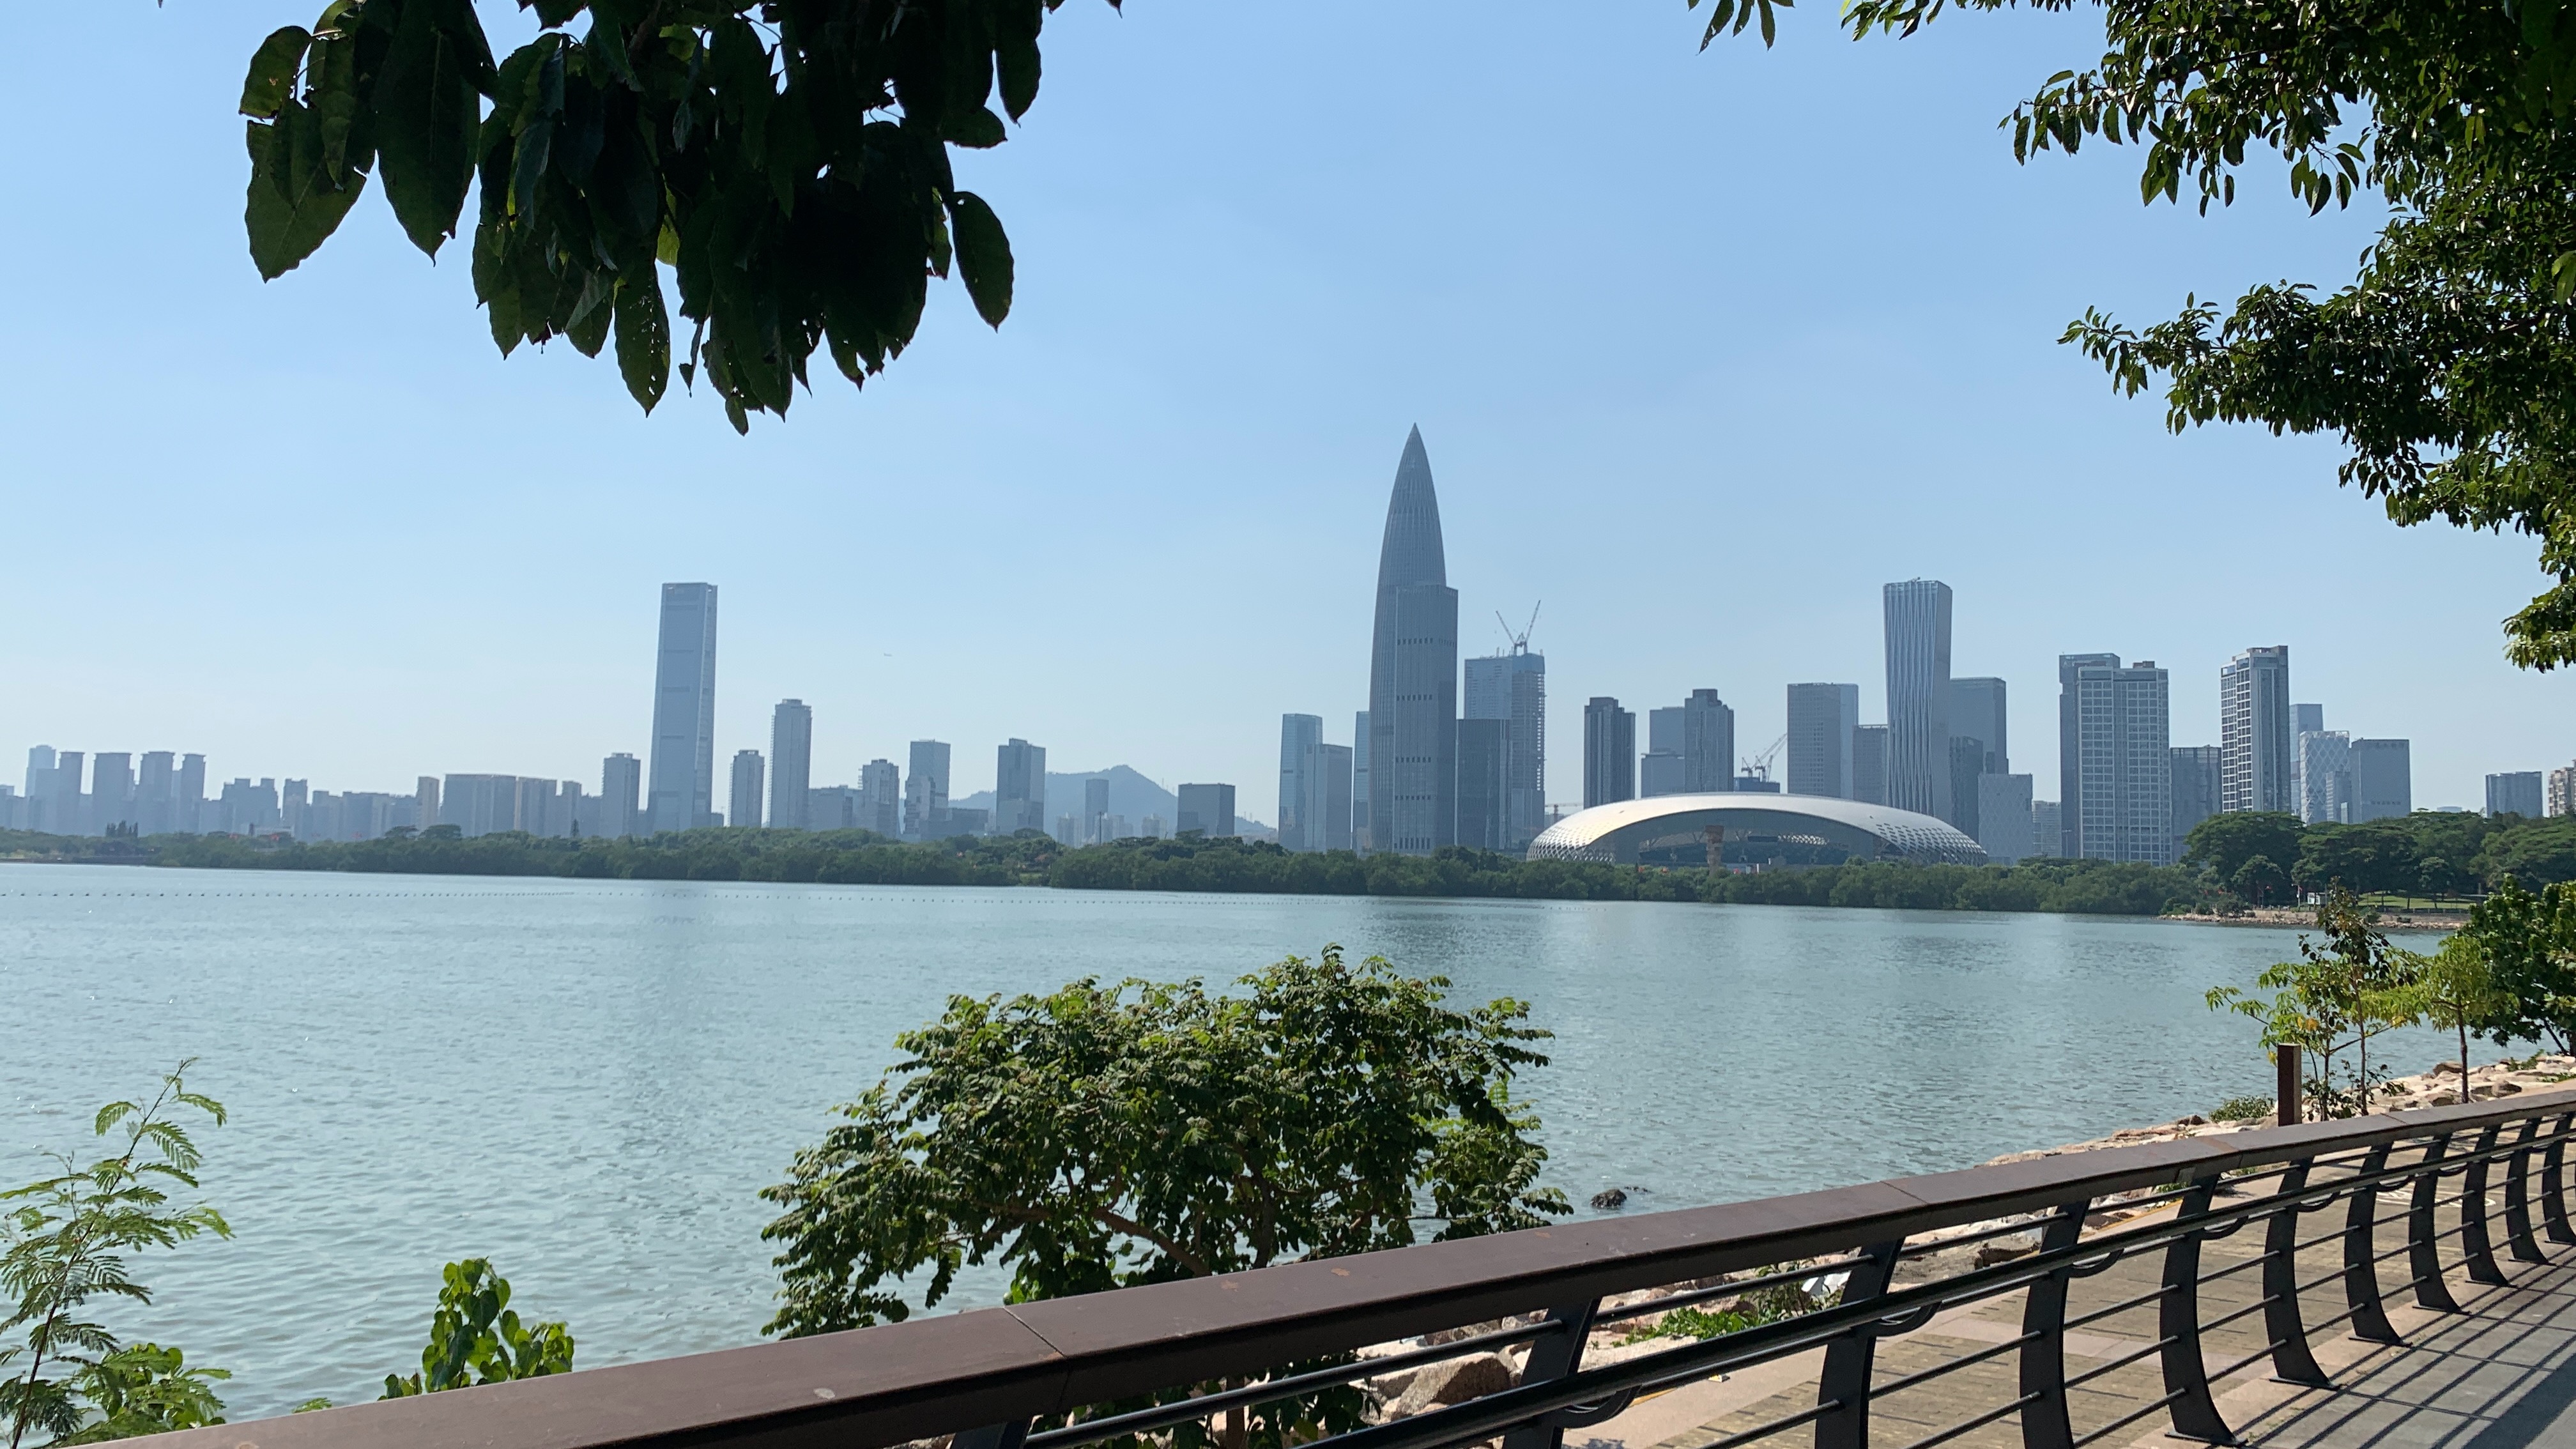 深圳湾公园到处都是美丽风景,你们觉得漂亮吗?